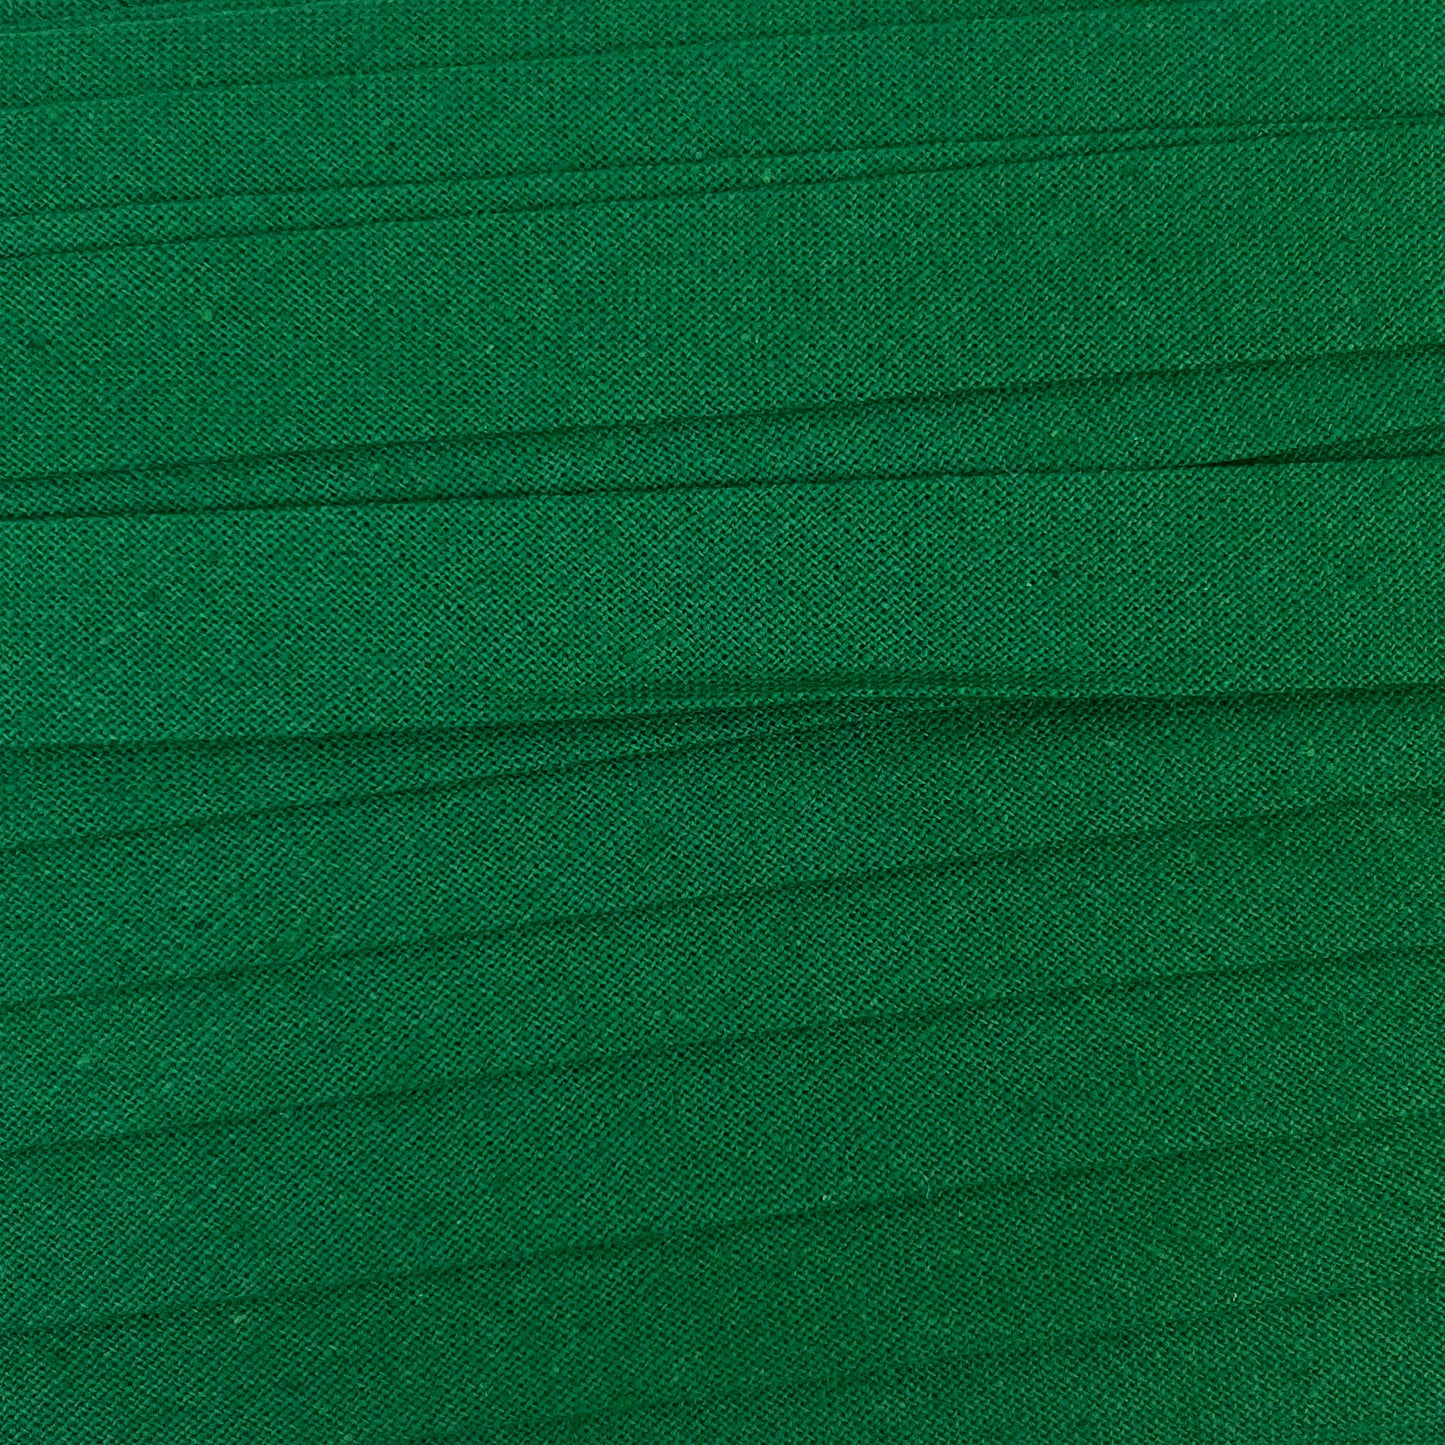 Sewing Gem - 12mm Bias Binding - Single Fold - 100% Cotton